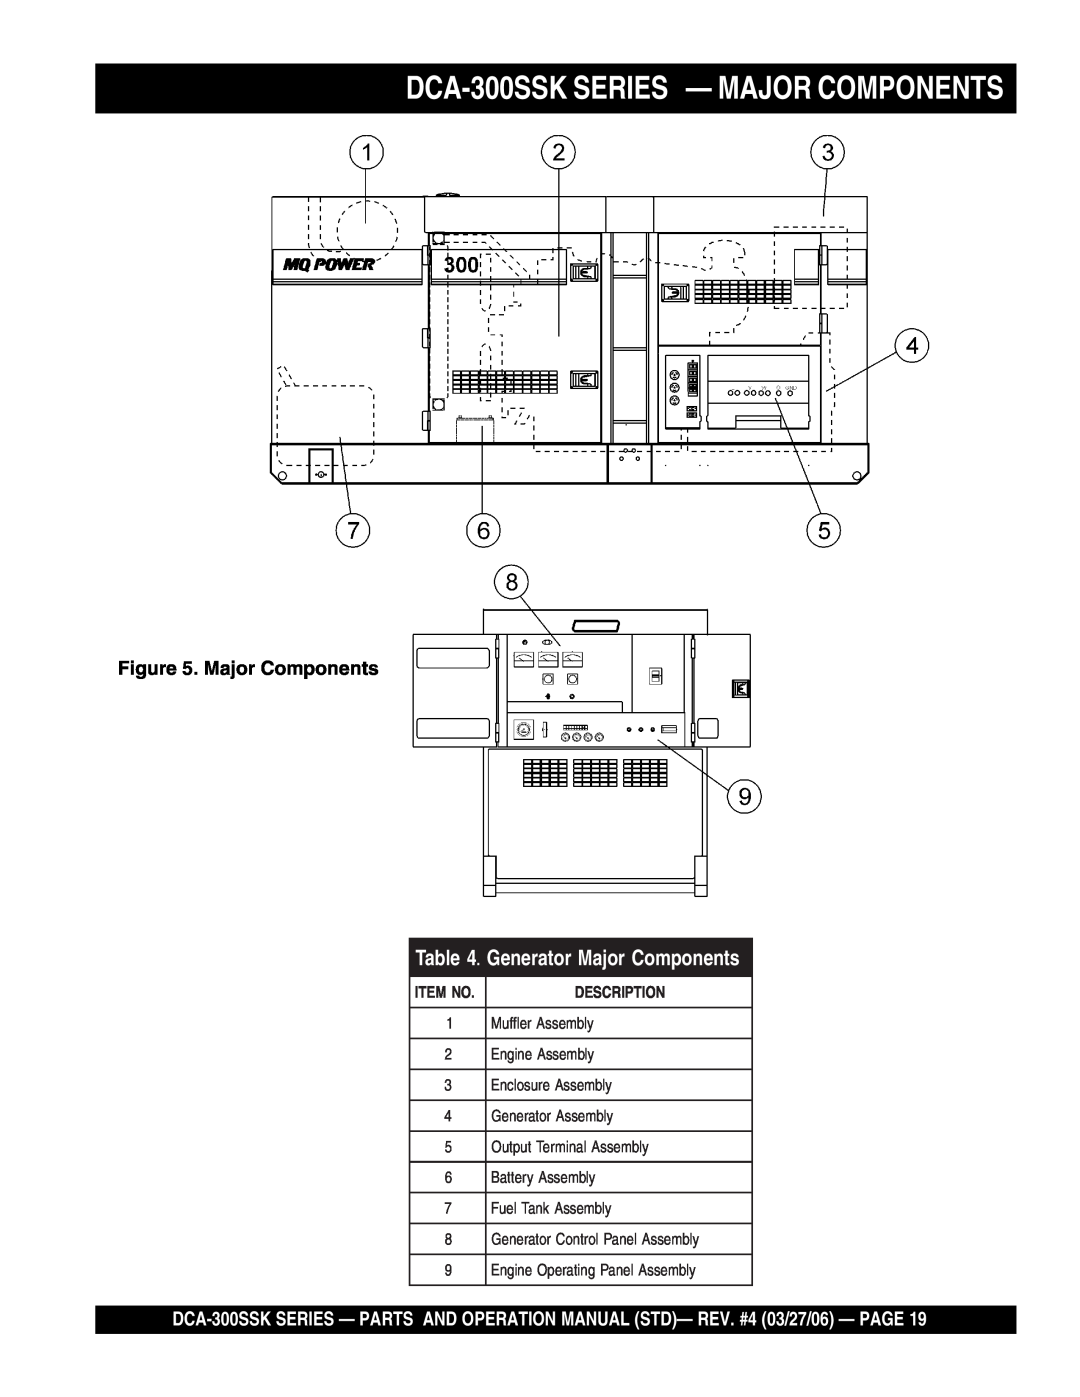 Multiquip manual DCA-300SSK SERIES - MAJOR COMPONENTS, Generator Major Components, Item No, Description 